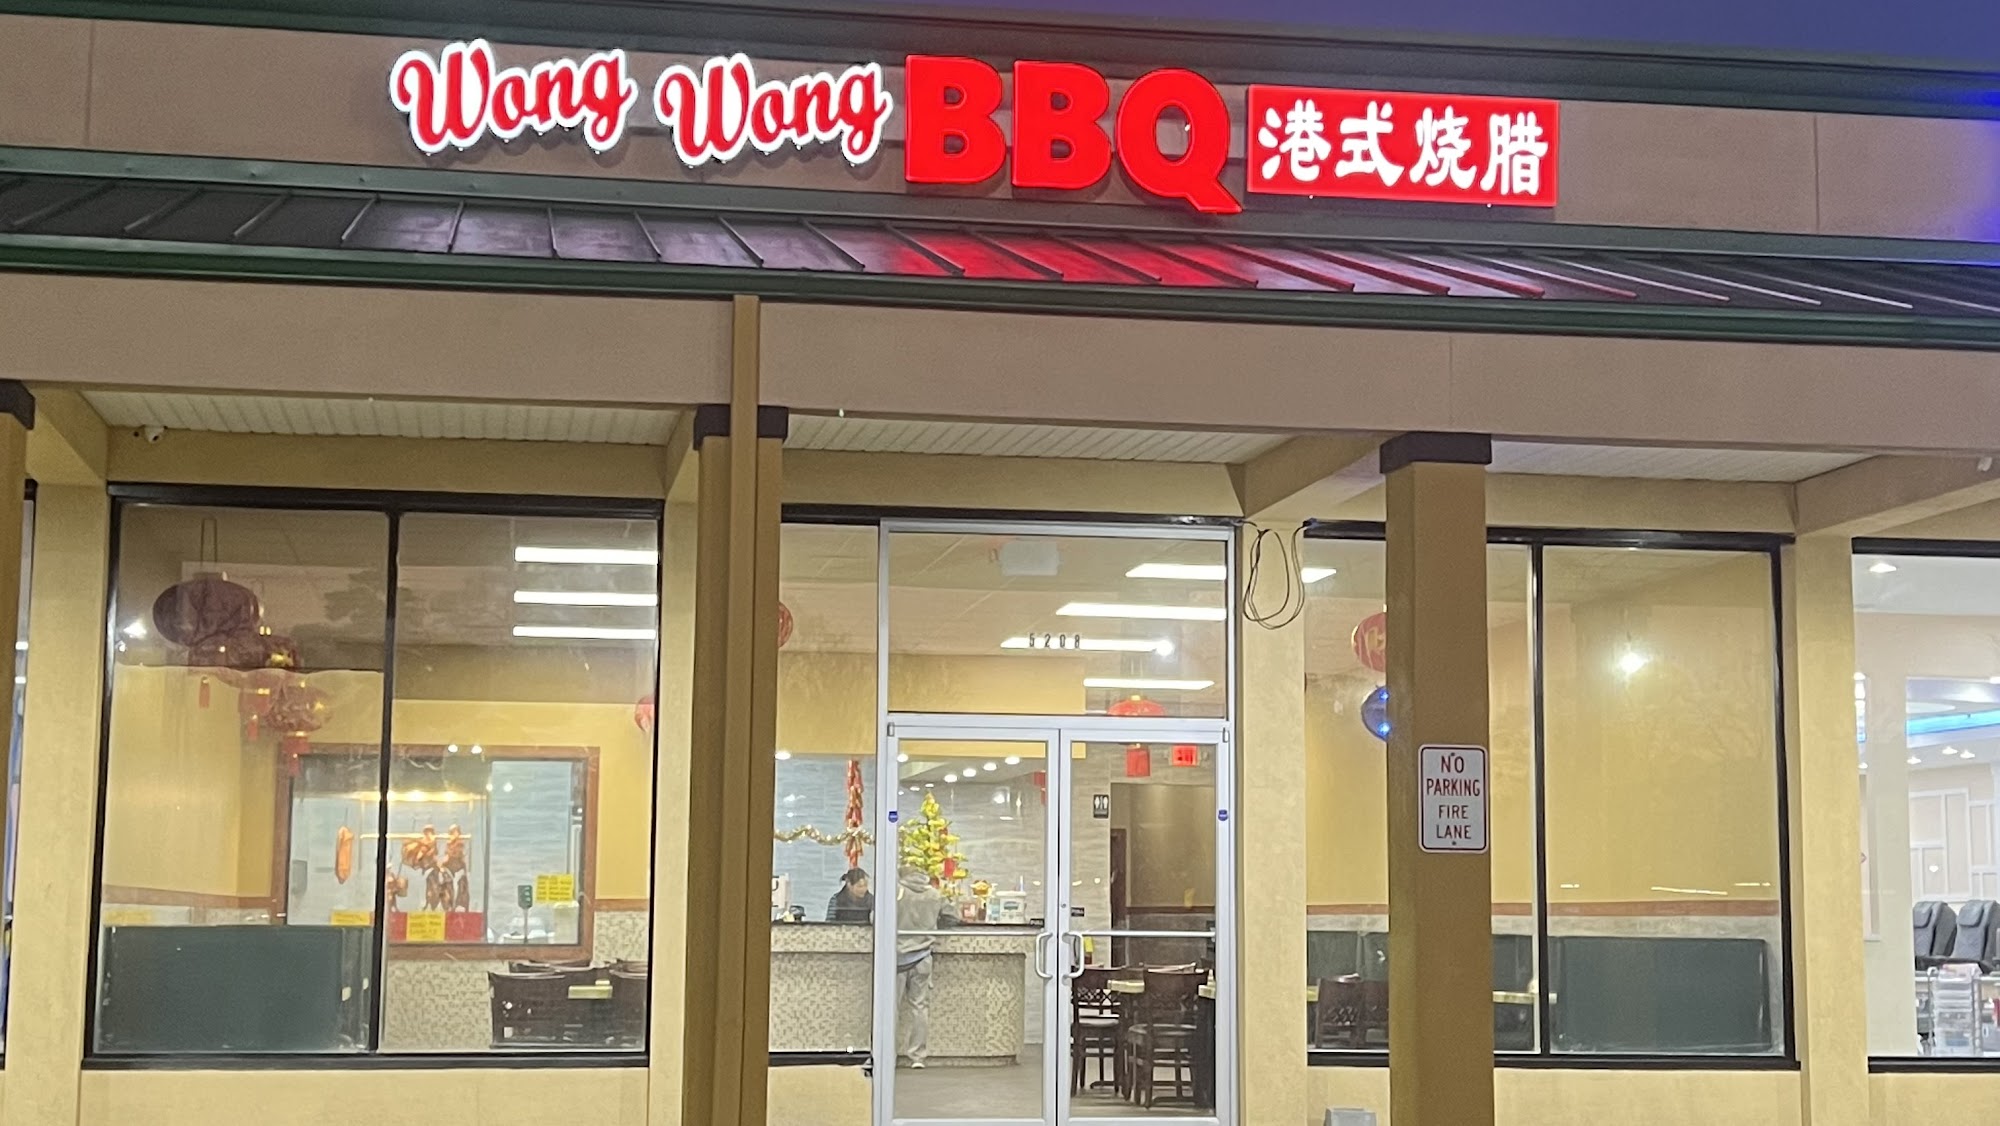 Wong Wong BBQ